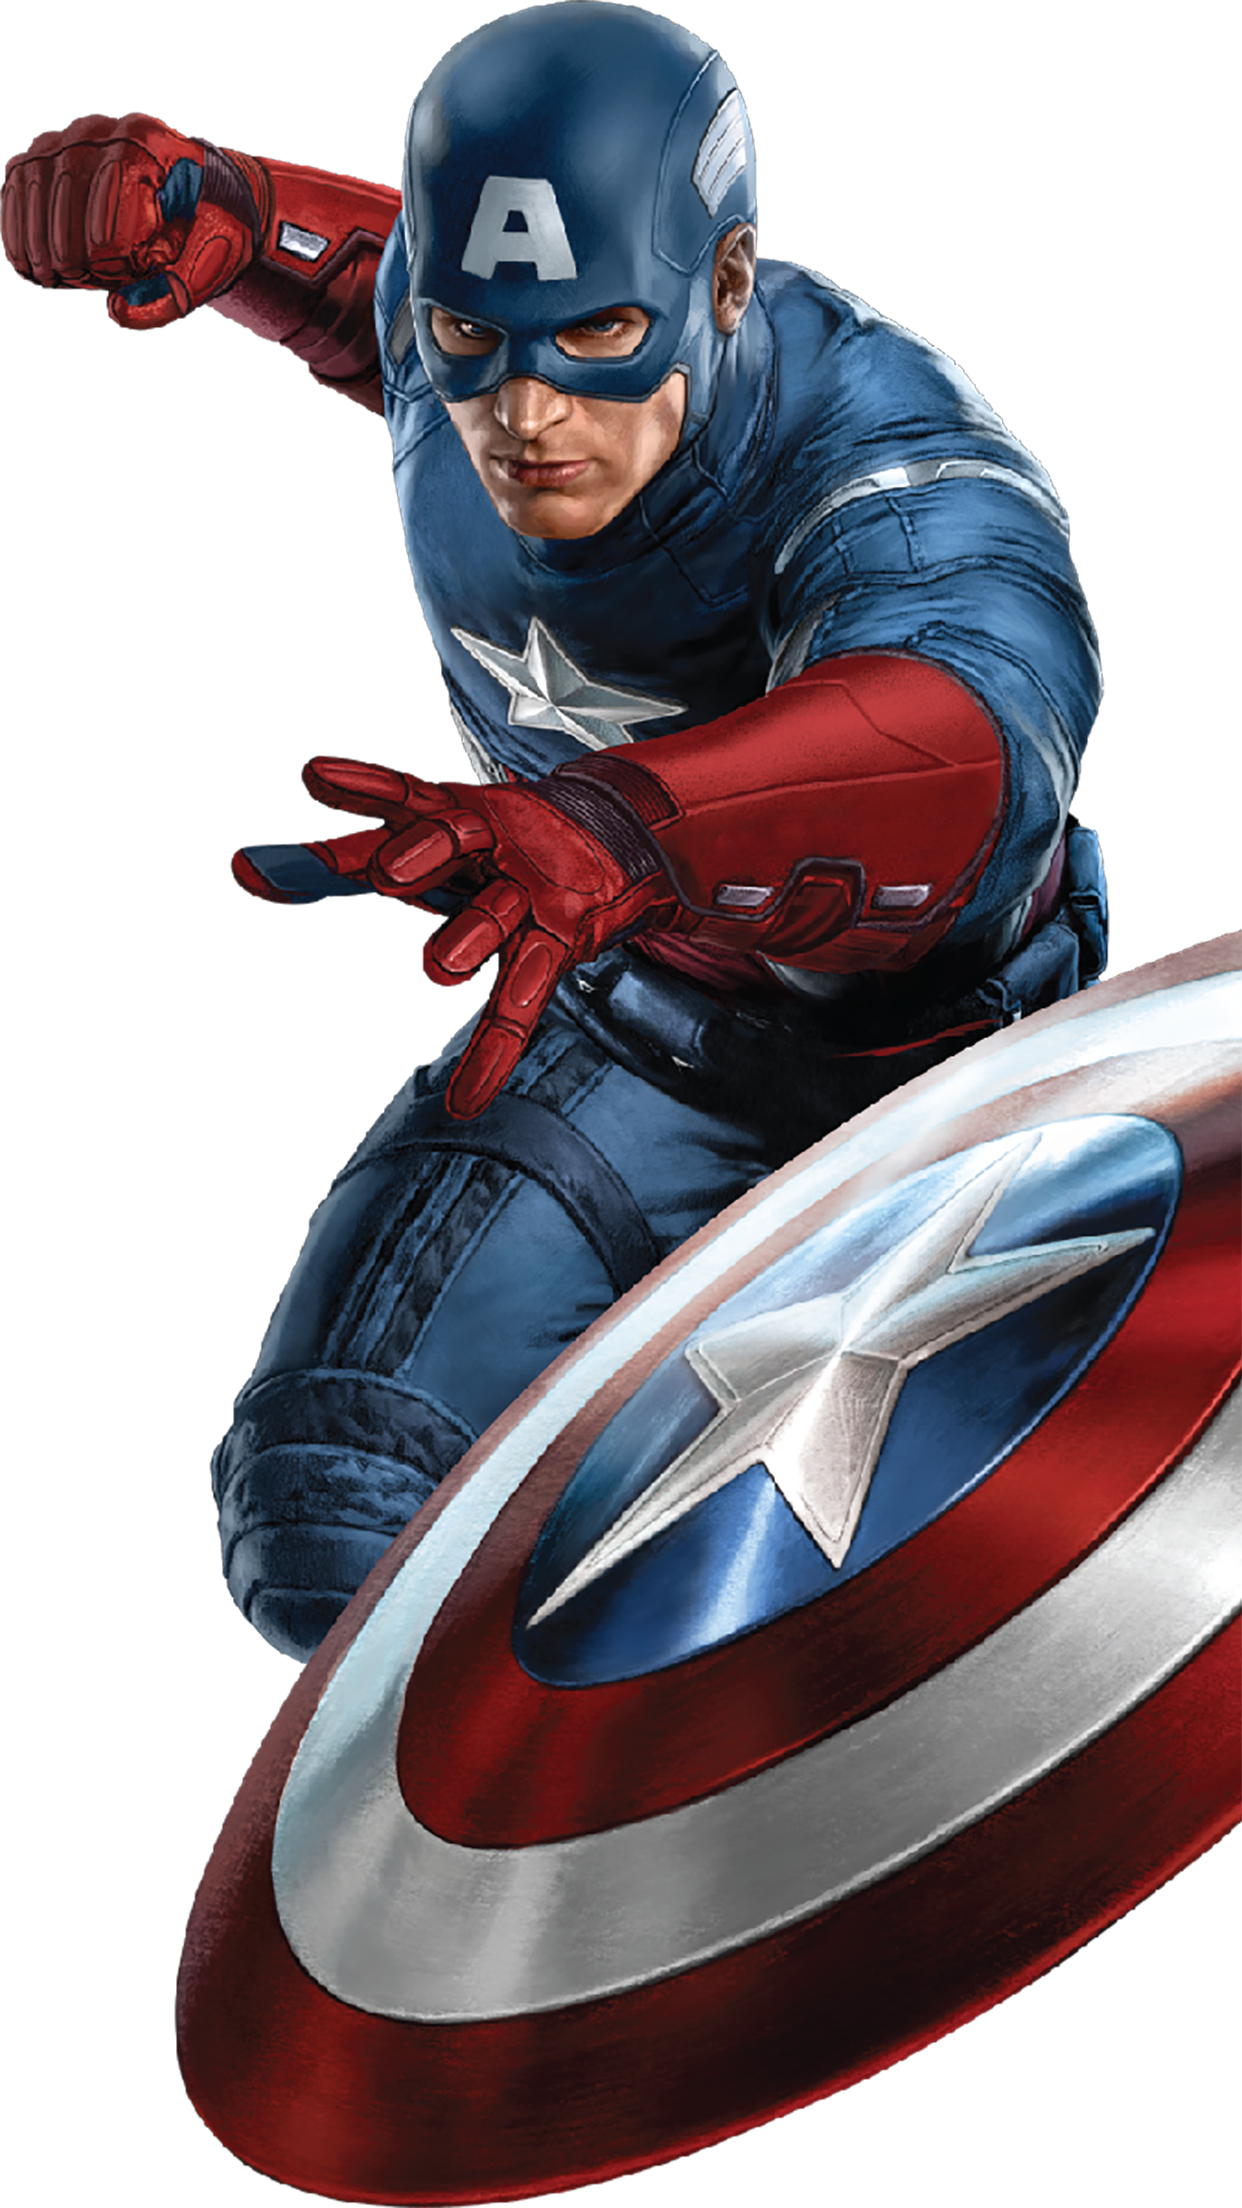 キャプテンアメリカ壁紙 キャプテン アメリカ スーパーヒーロー 架空の人物 ヒーロー アベンジャーズ 24997 Wallpaperuse